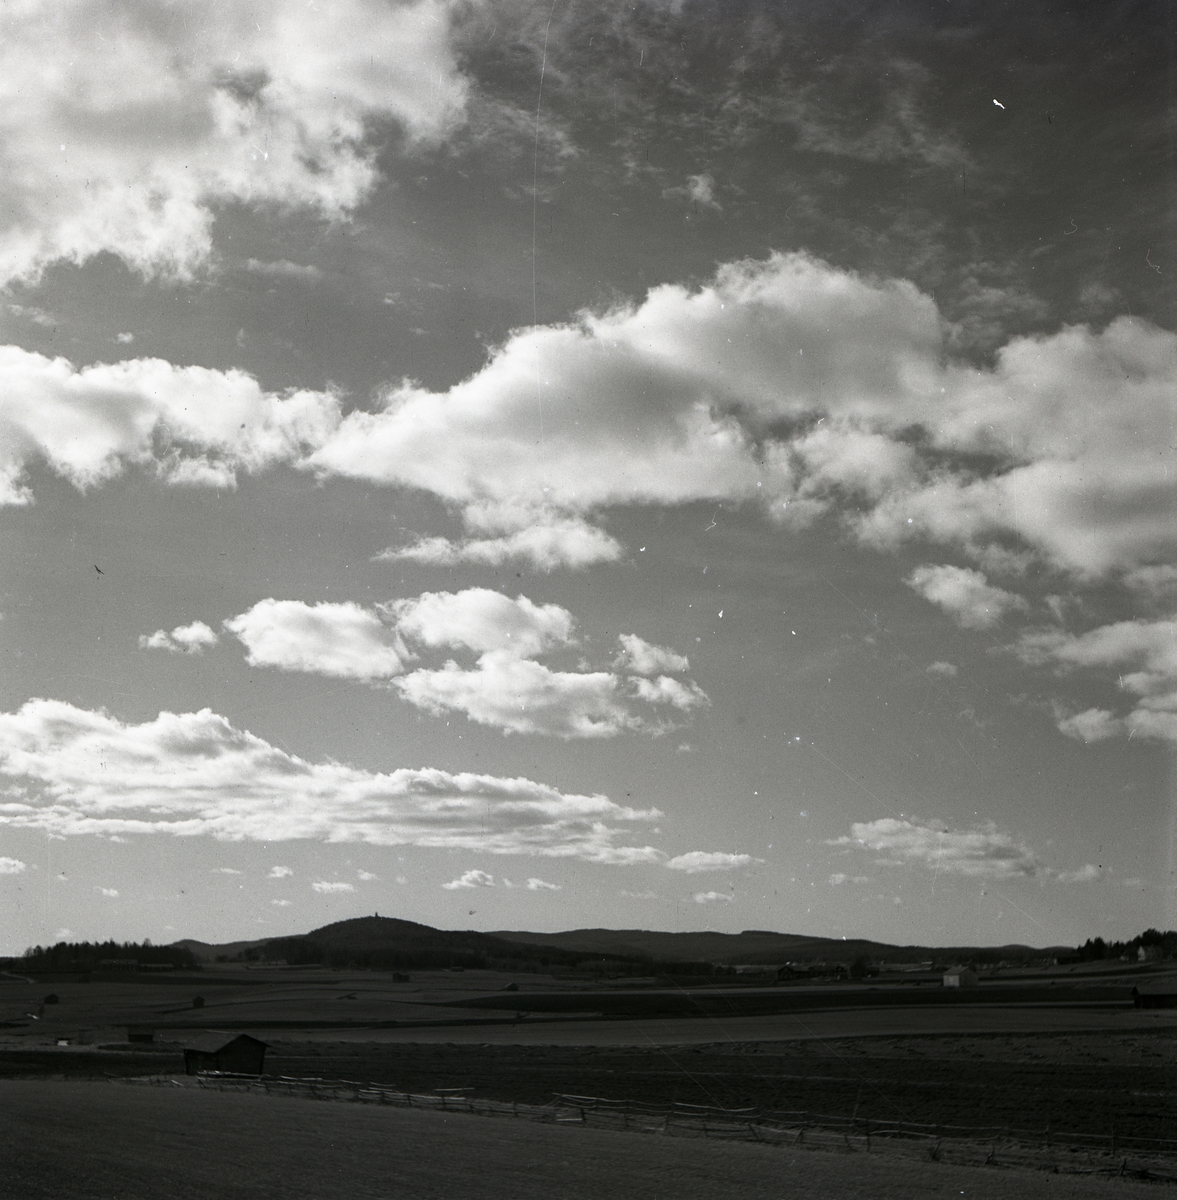 En landskapsvy under en molnig himmel, sommaren 1949.